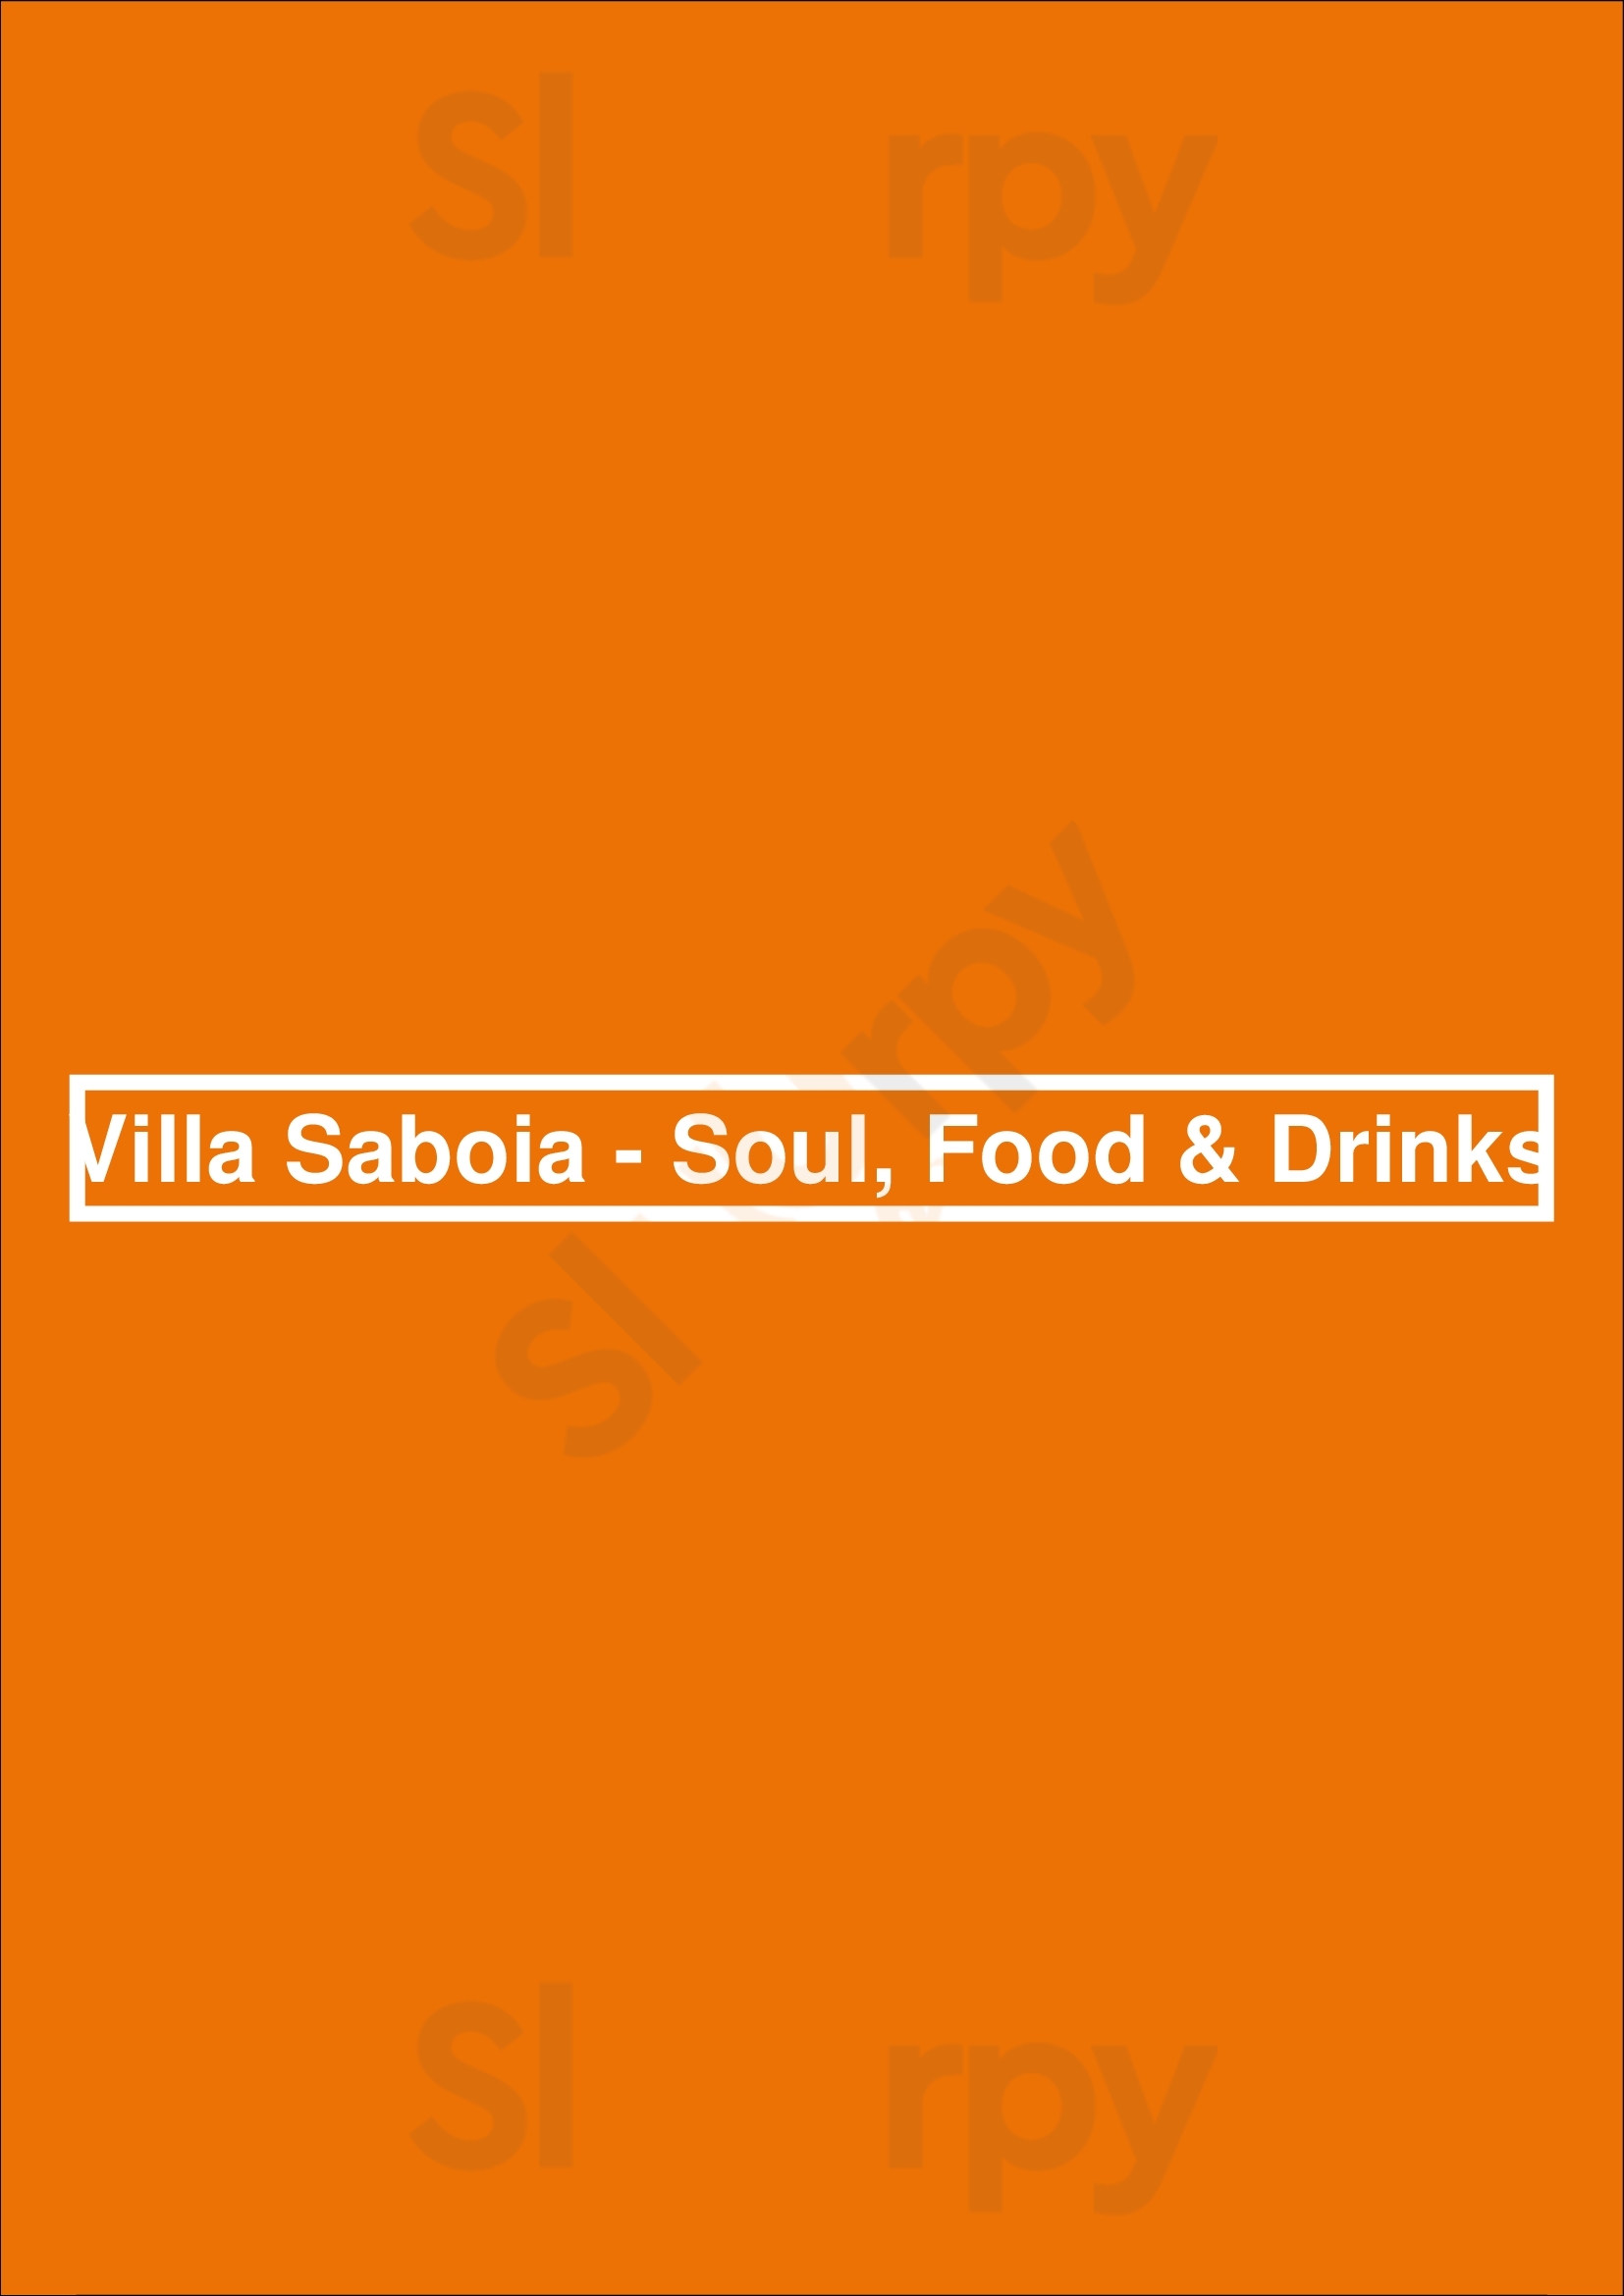 Villa Saboia - Soul, Food & Drinks Estoril Menu - 1